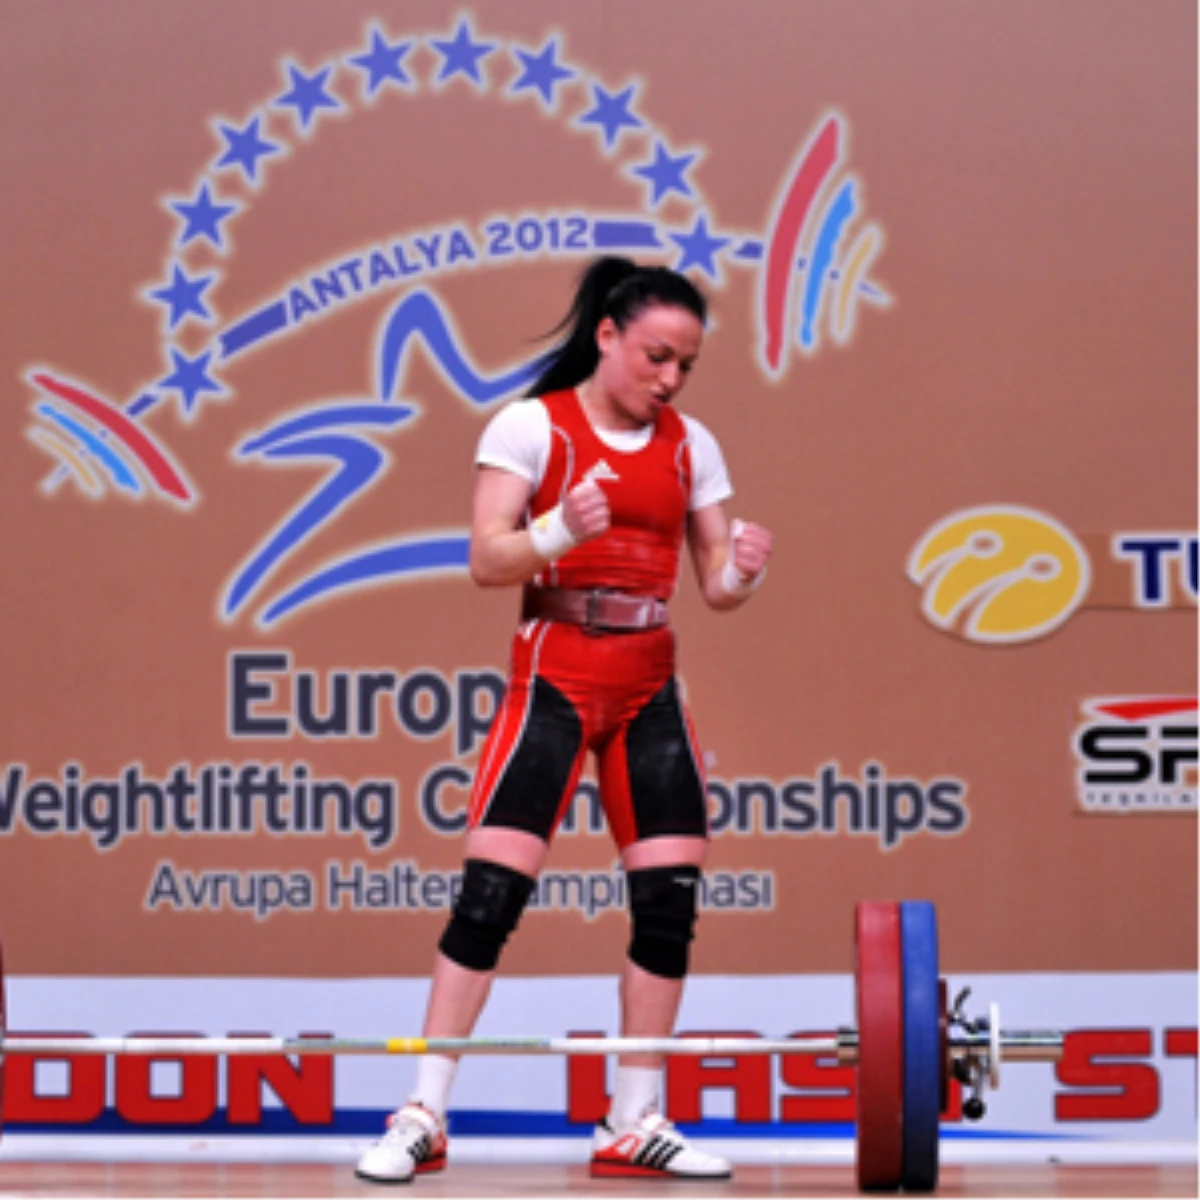 Avrupa Halter Şampiyonası